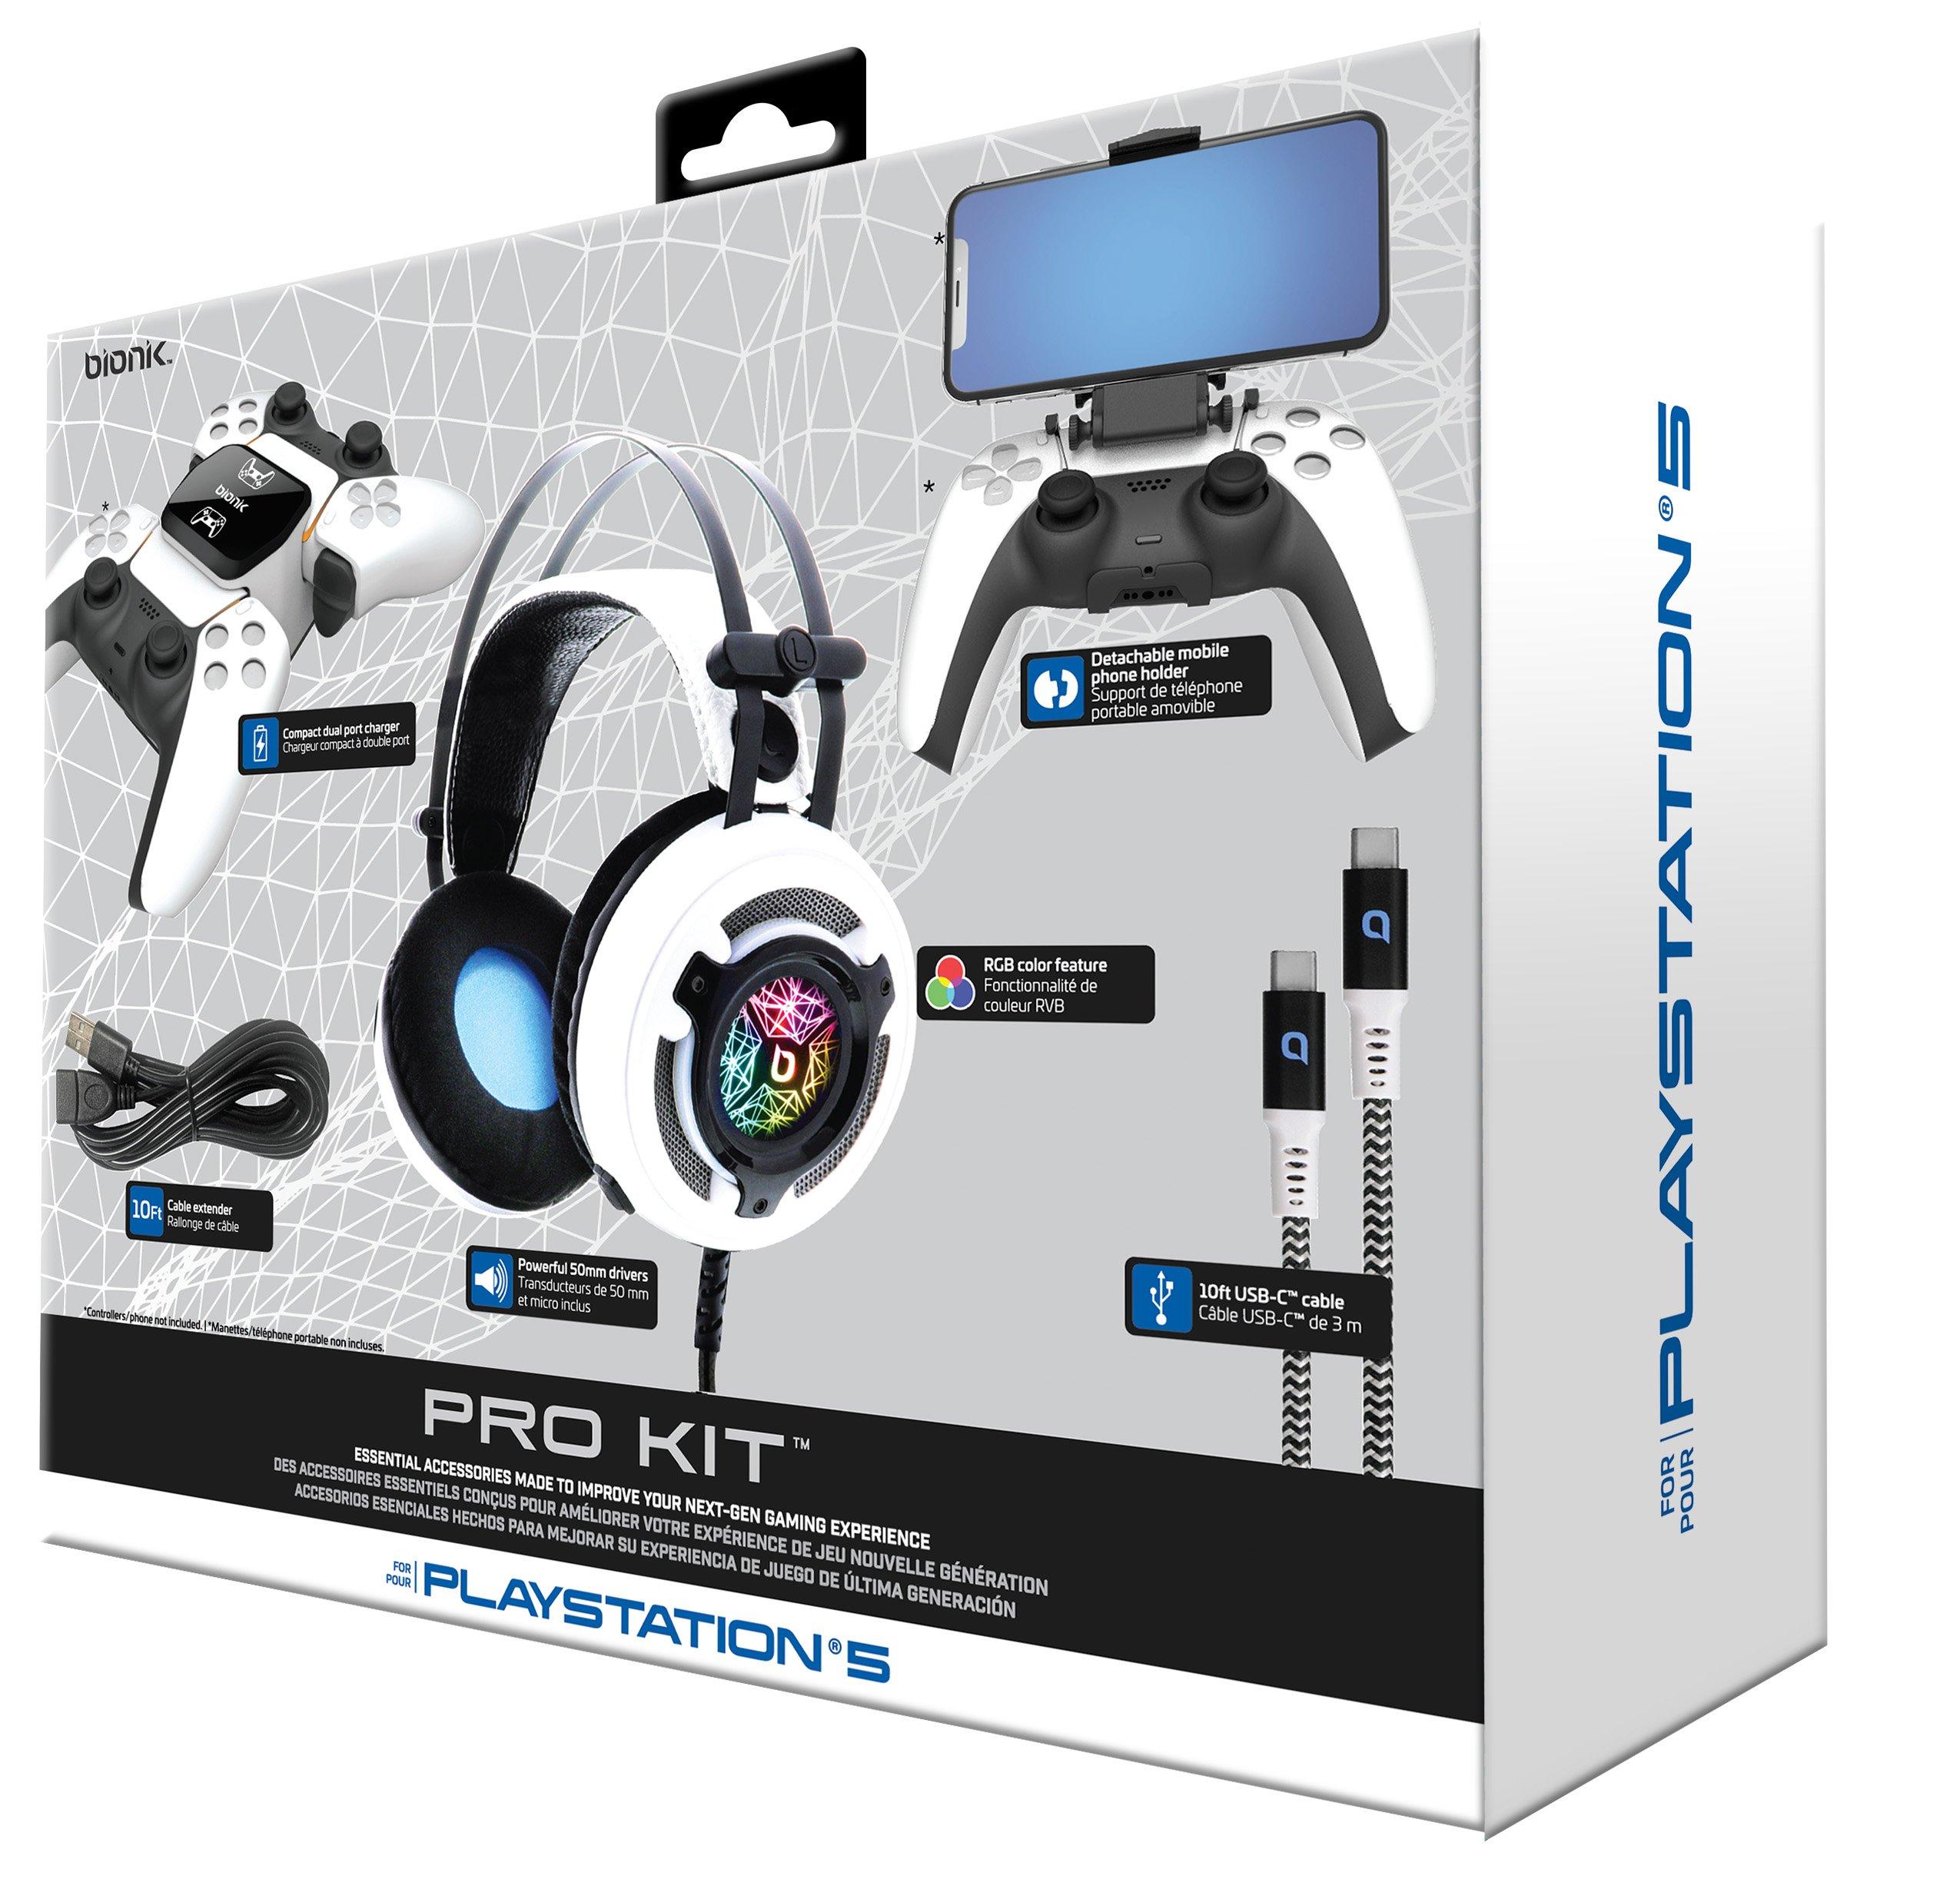 Kit Accesorios Ps5 12 En 1 Para PlayStation 5 –